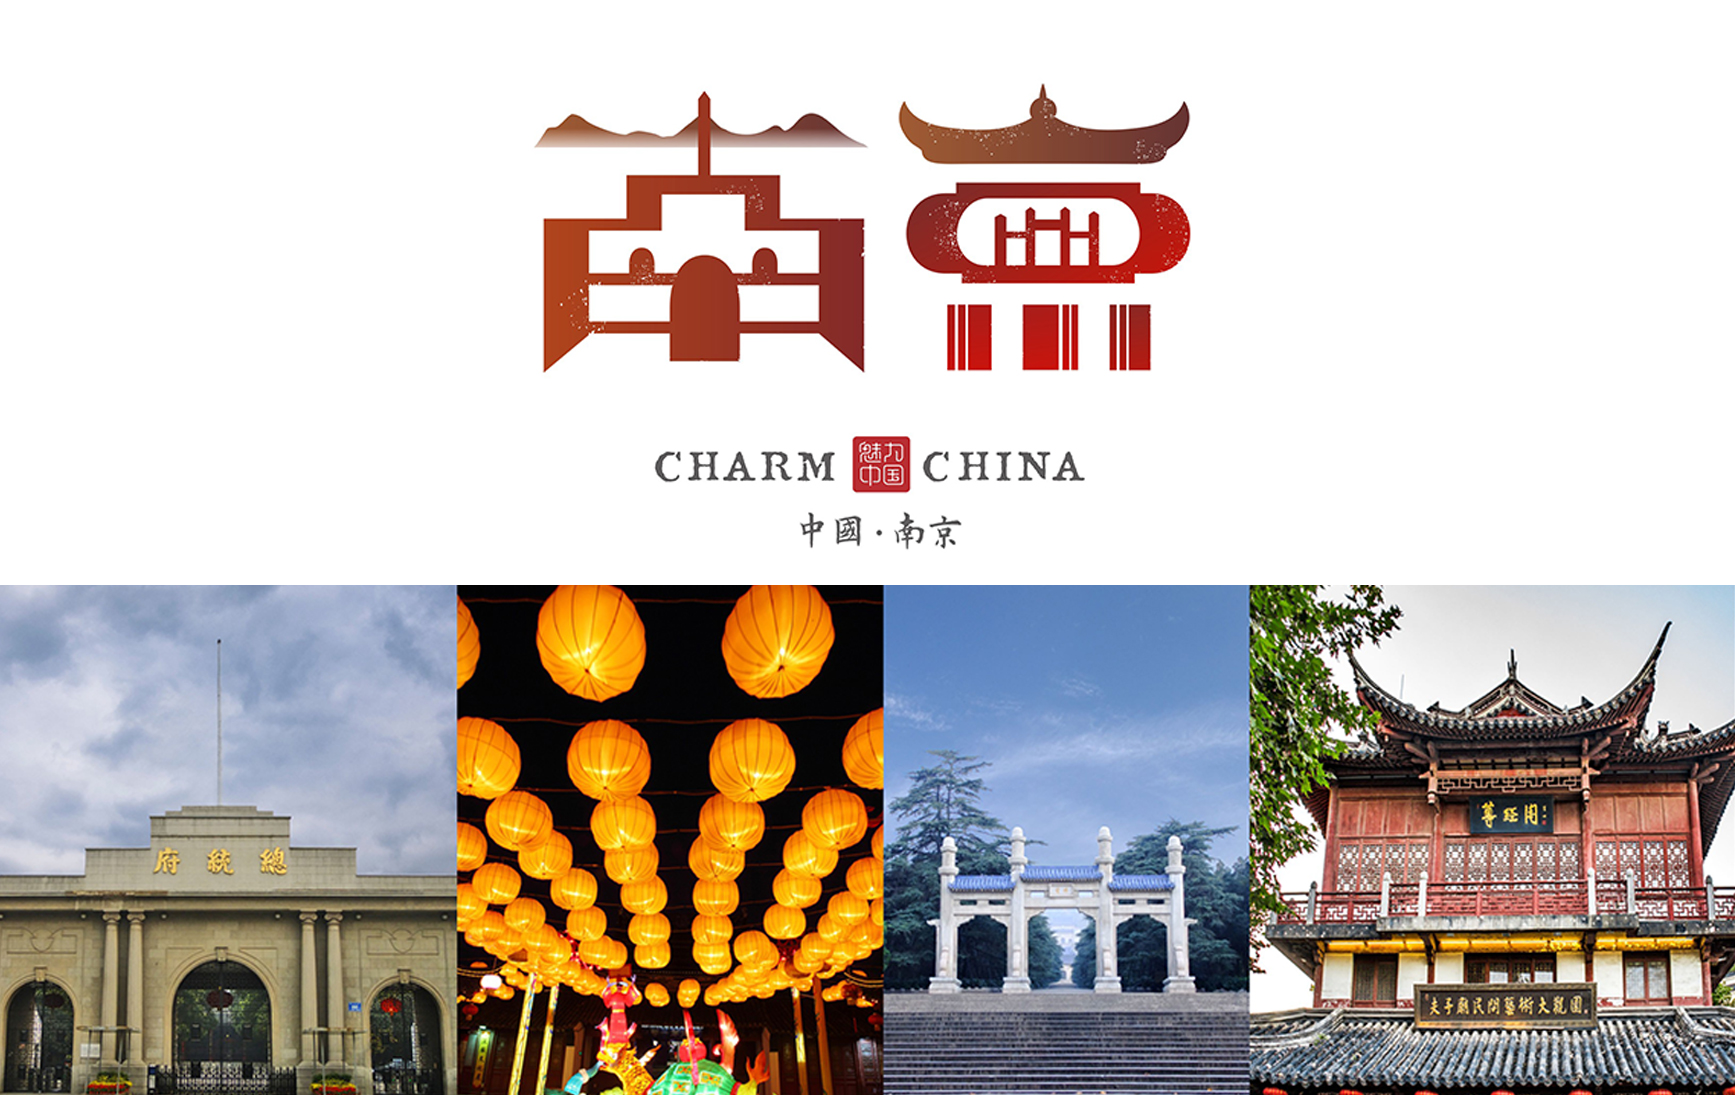 上行设计/石昌鸿 魅力中国城市字体设计（省市全称版）